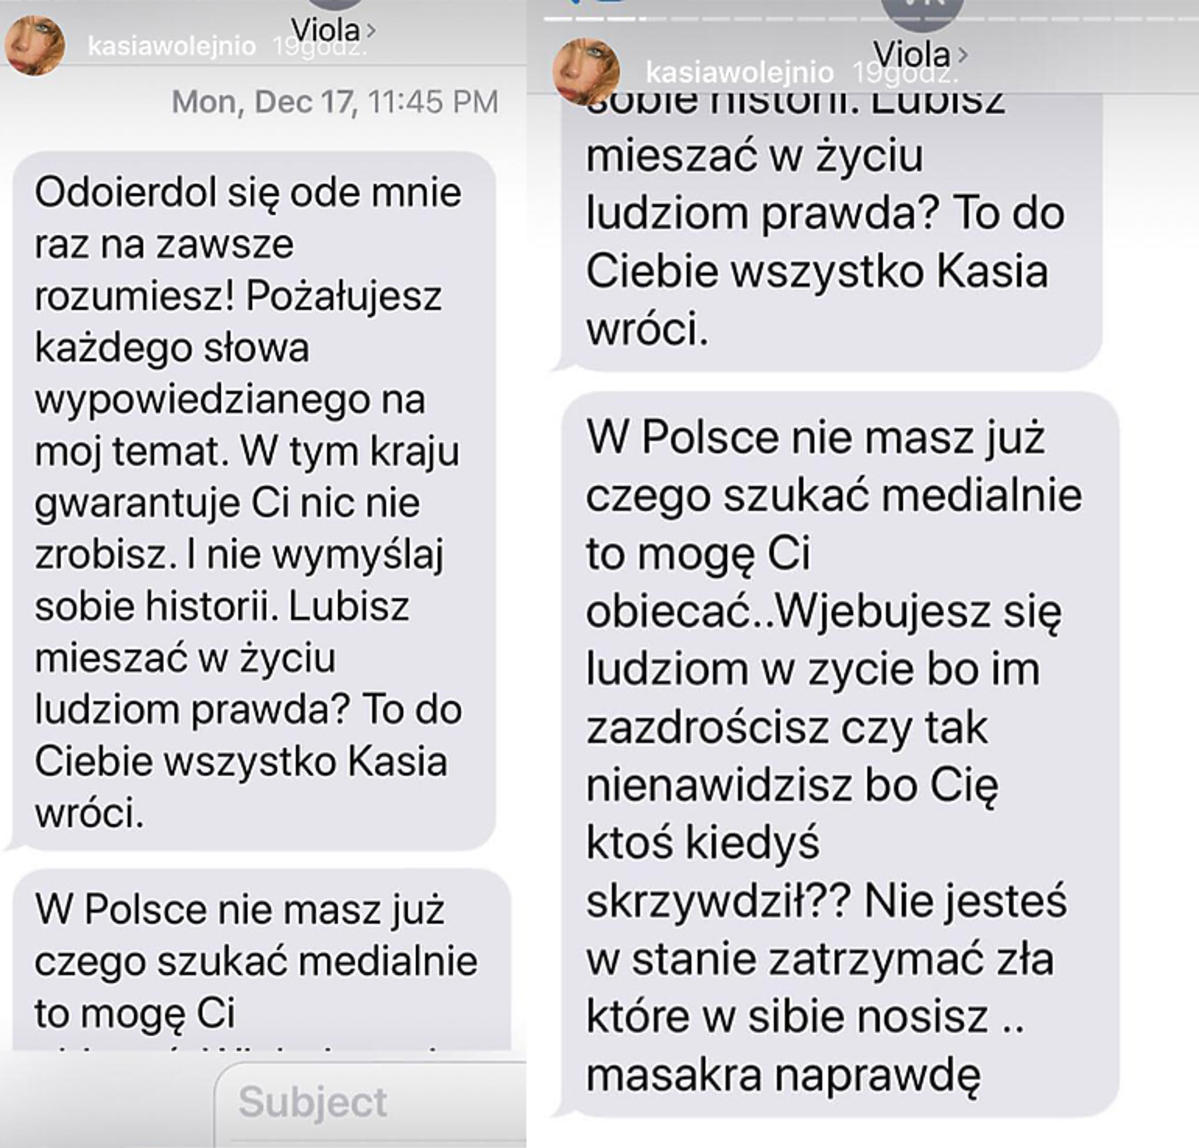 Kasia Wołejnio pokazała smsy od Violi Kołakowskiej